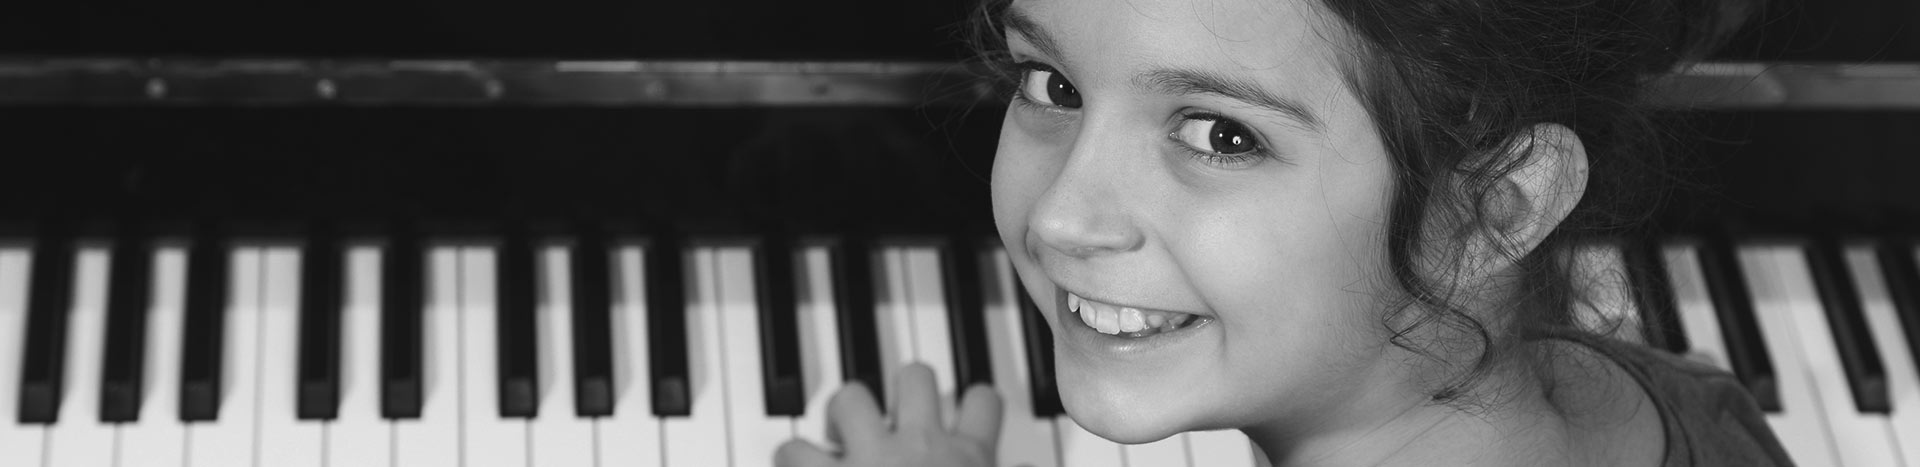 Cours de piano privé pour enfant, leçon de musique - Mirabel, Saint-Eustache